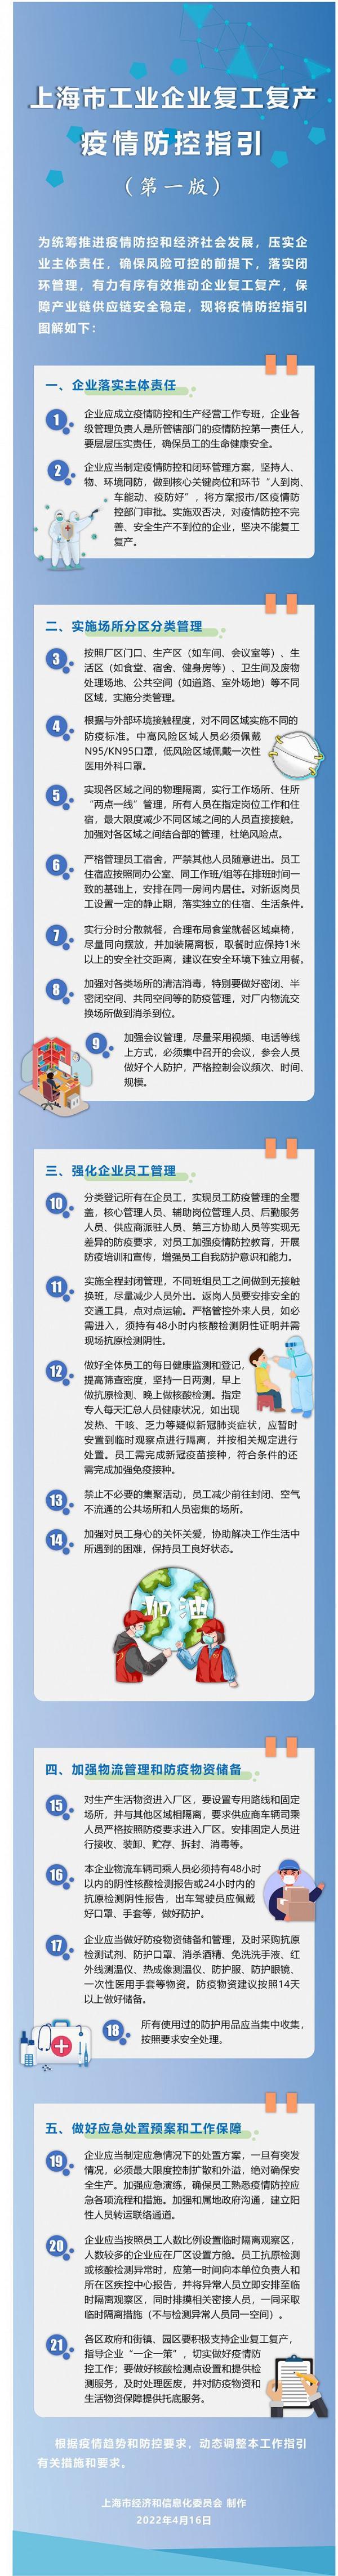 上海发布复工复产疫情防控指引 企业“一企一策”做好防控工作